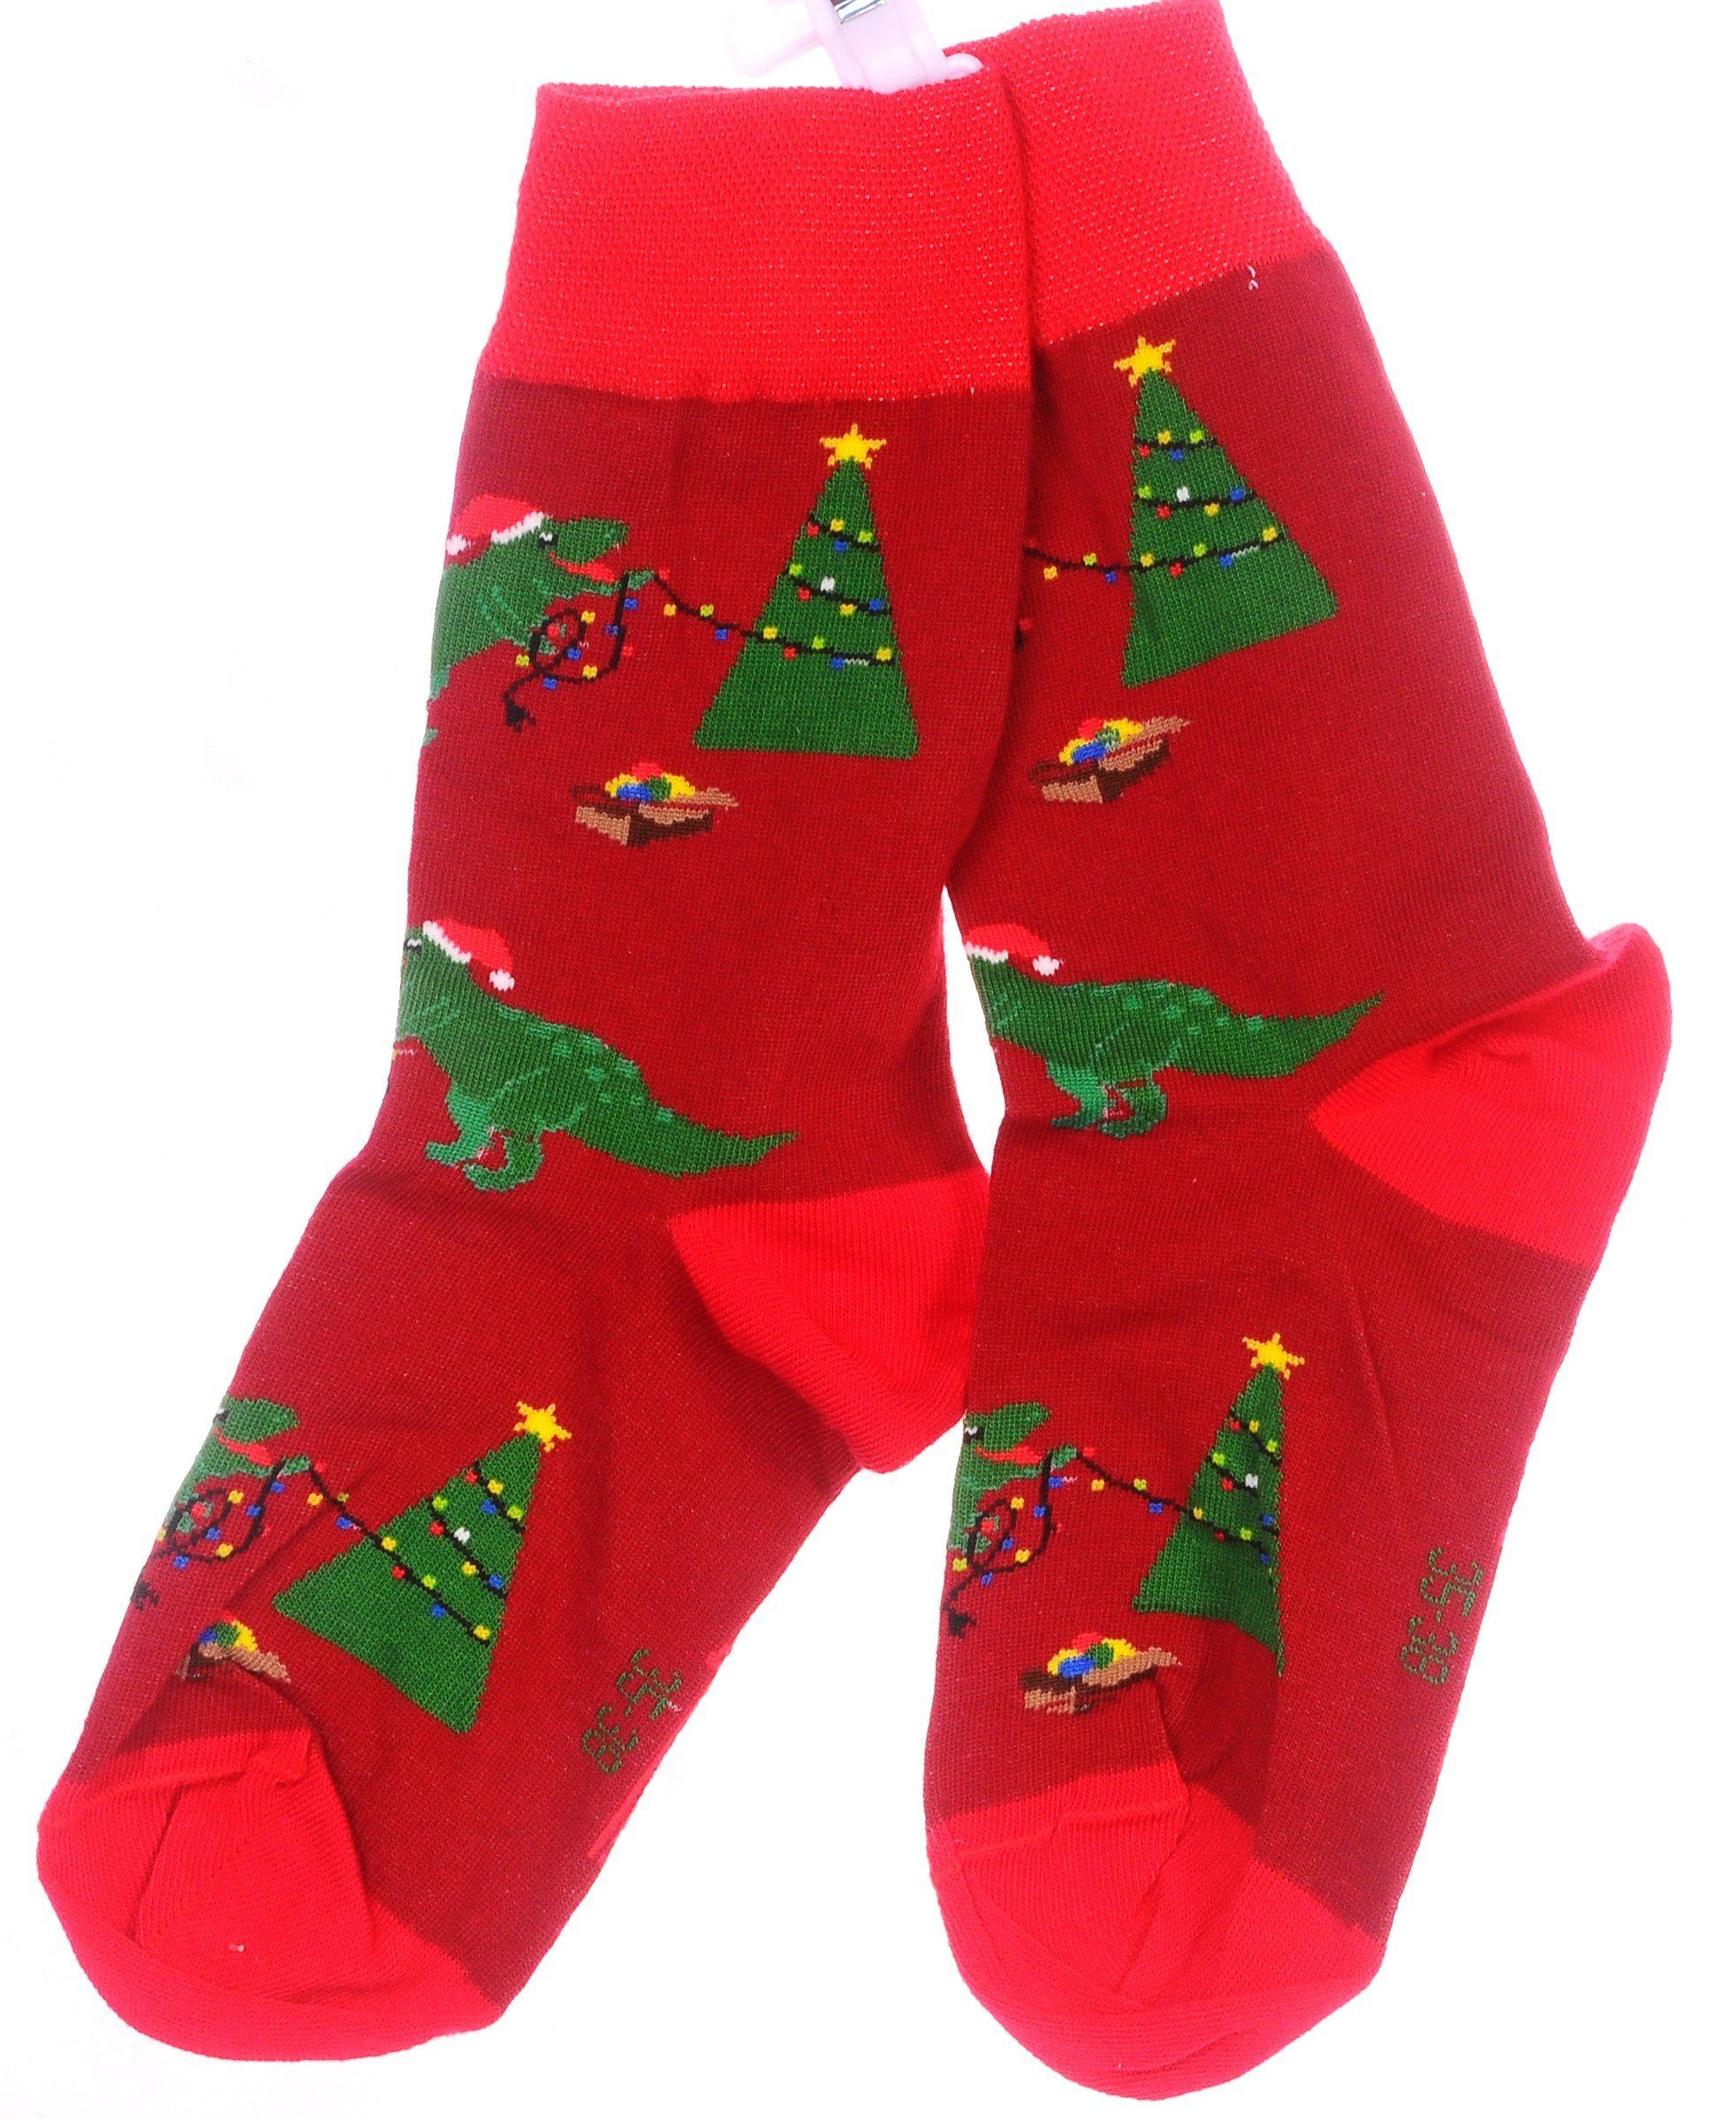 Martinex Socken 1 Paar Socken Strümpfe 27 31 35 38 39 42 43 46 Weihnachtssocken mit Drachen Muster und Tannenbaum